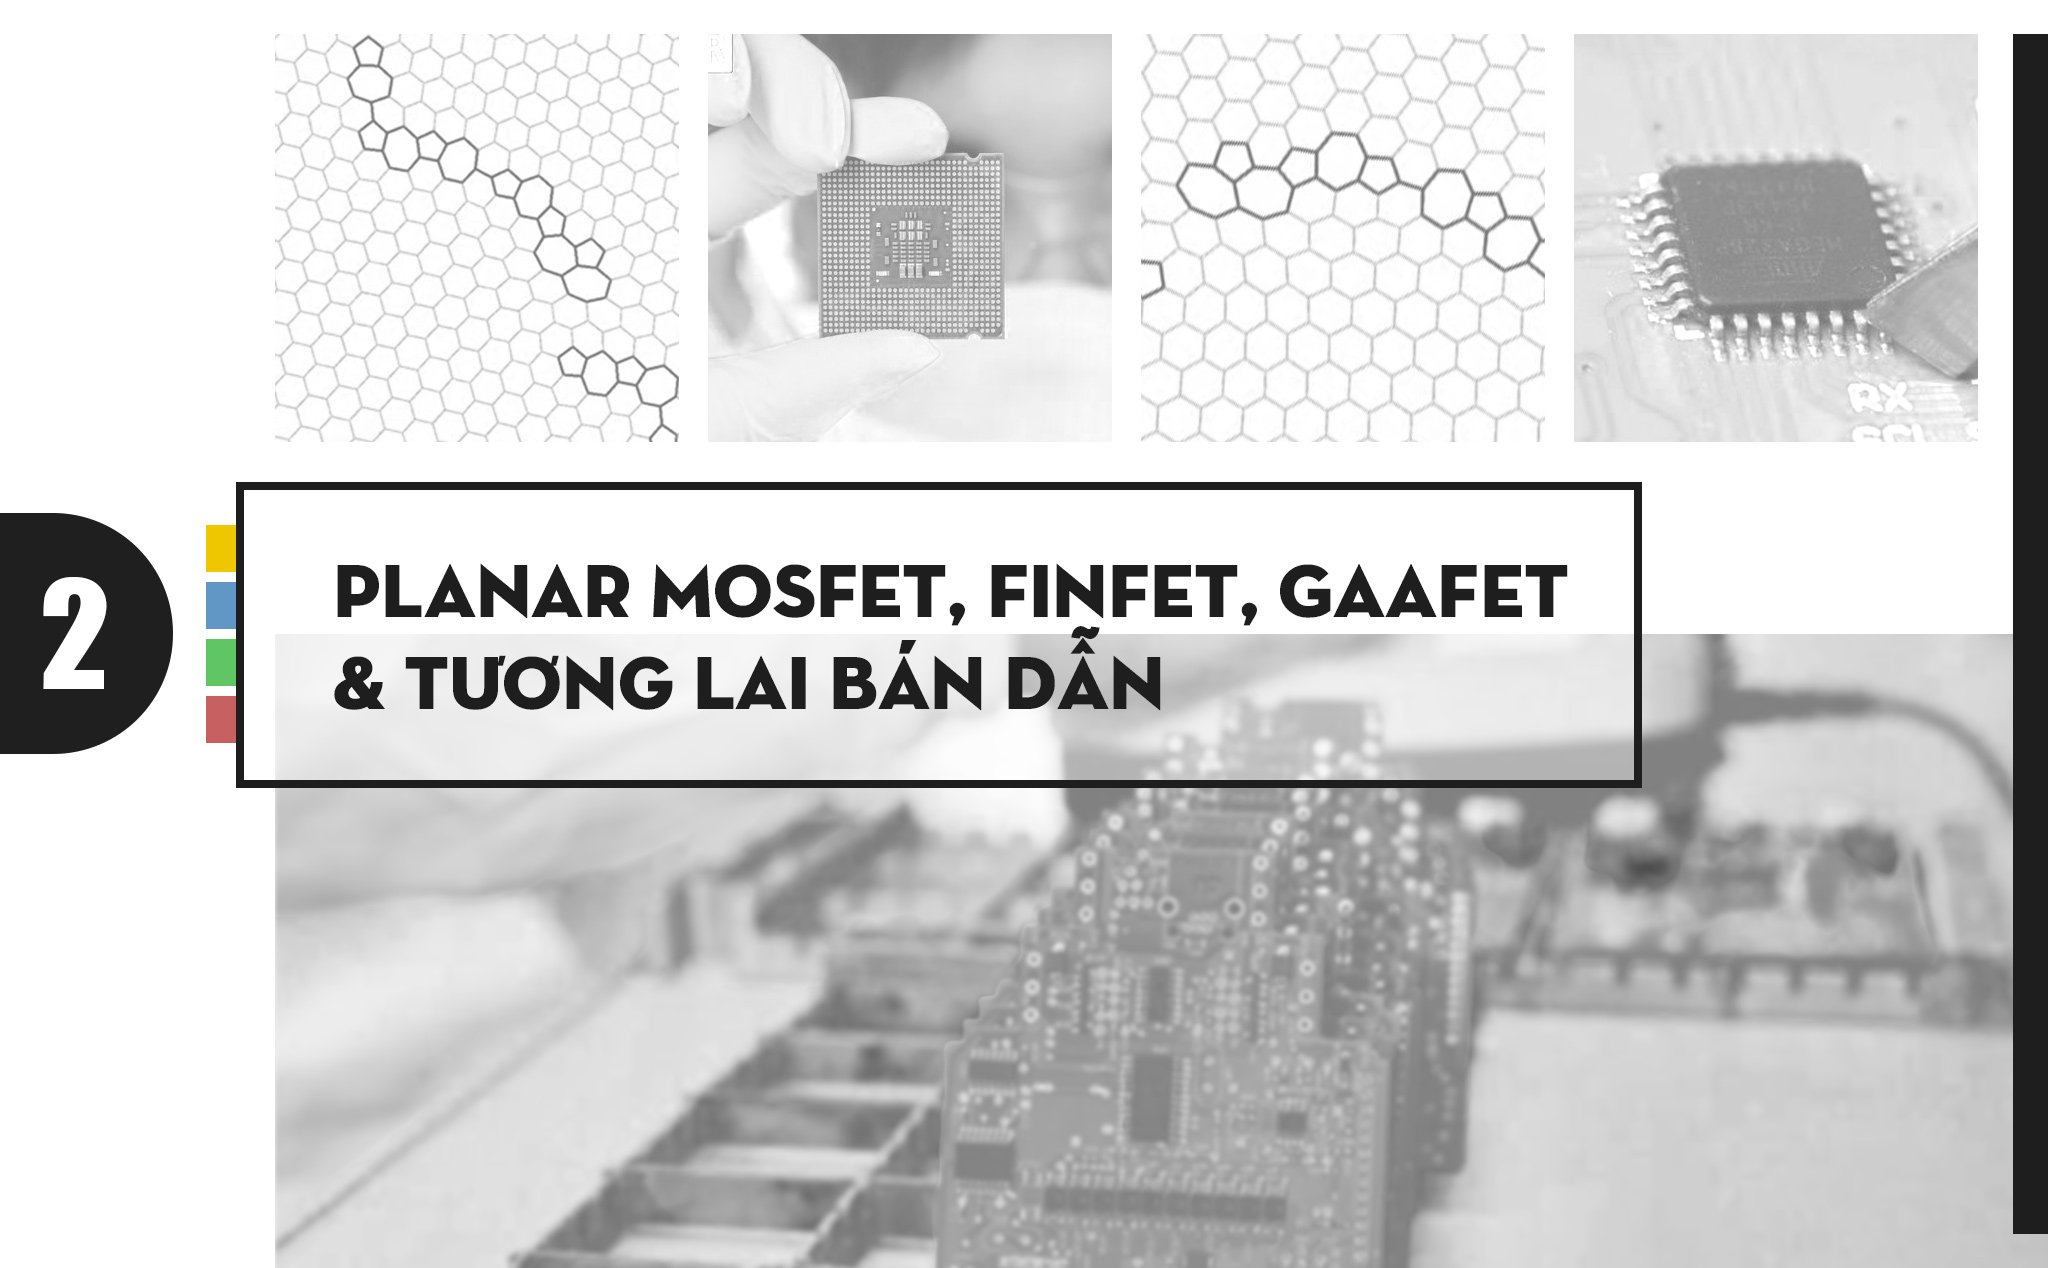 Planar MOSFET, FinFET, GAAFET và tương lai của ngành bán dẫn